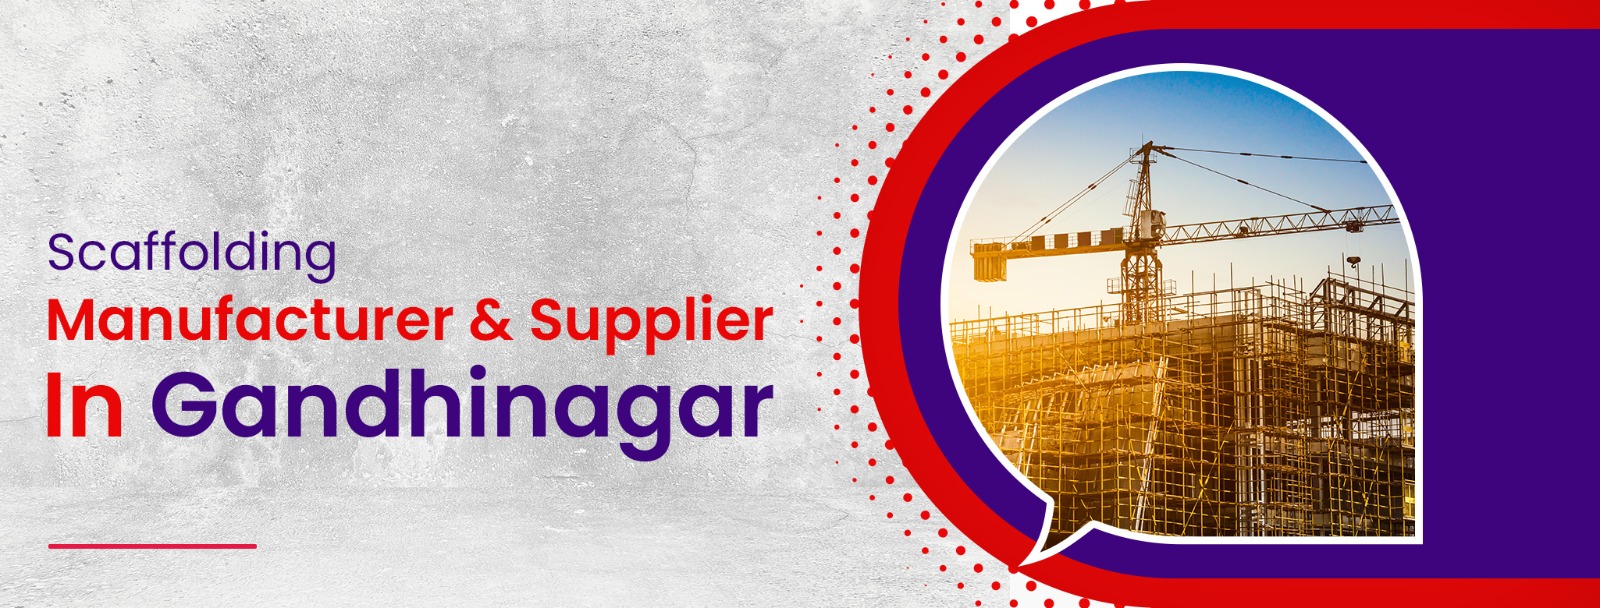 Scaffolding Manufacturer & Supplier In Gandhinagar